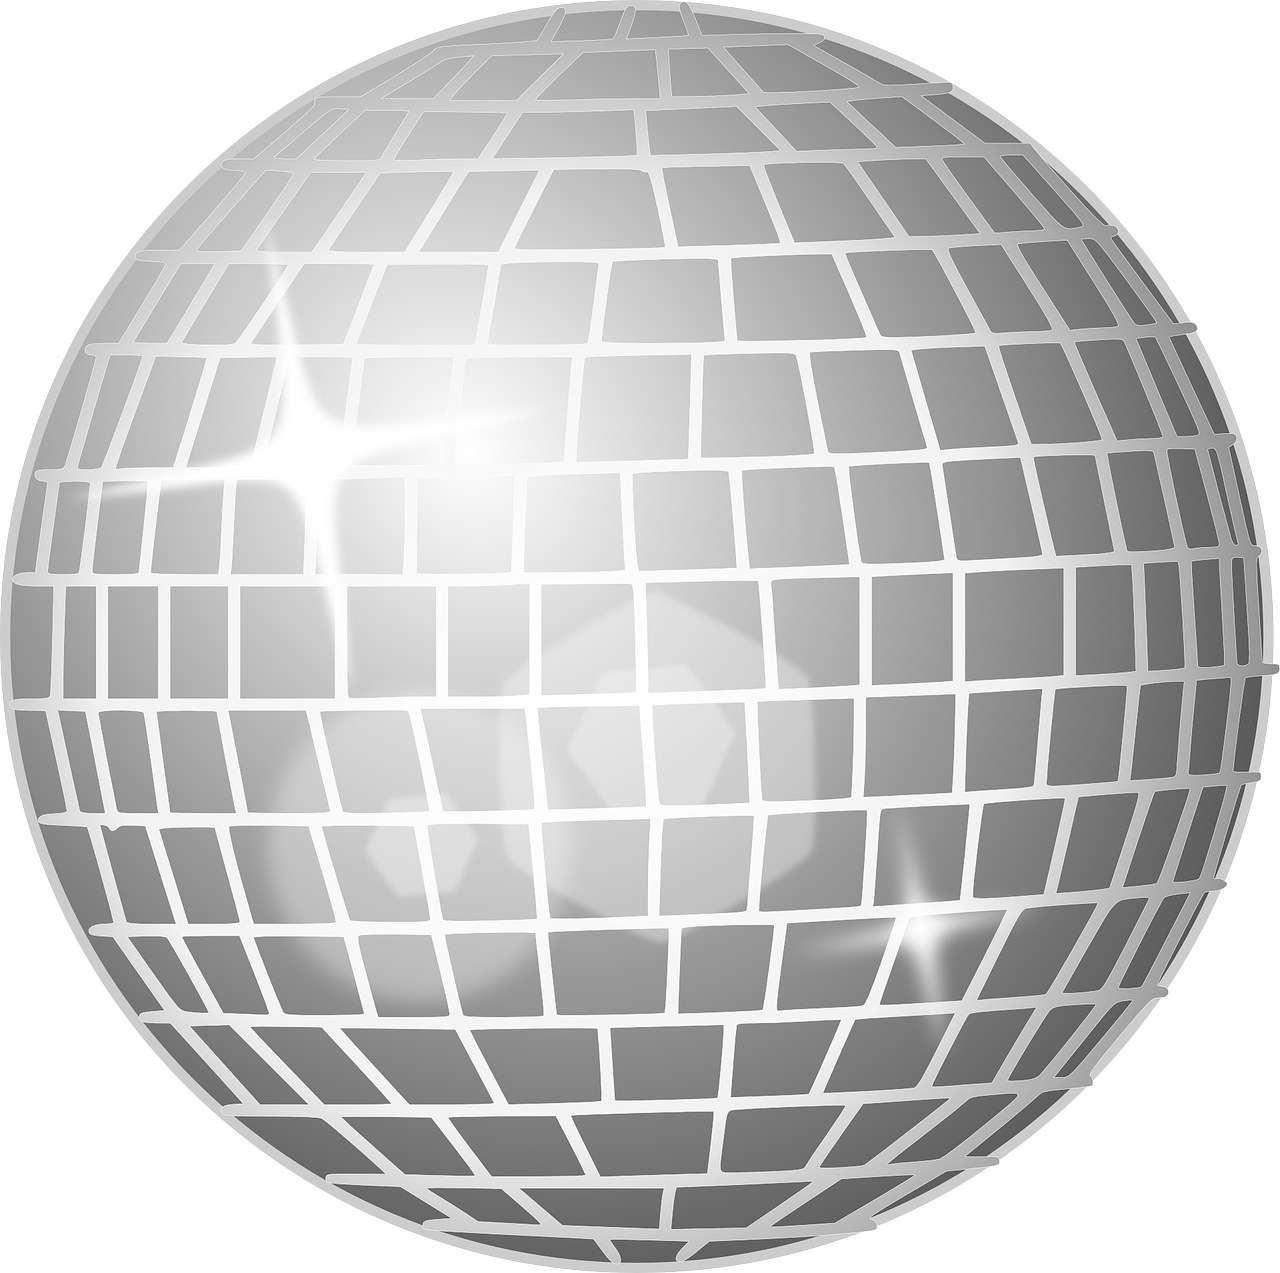 disco ball, mirror ball, glitter ball-160937.jpg